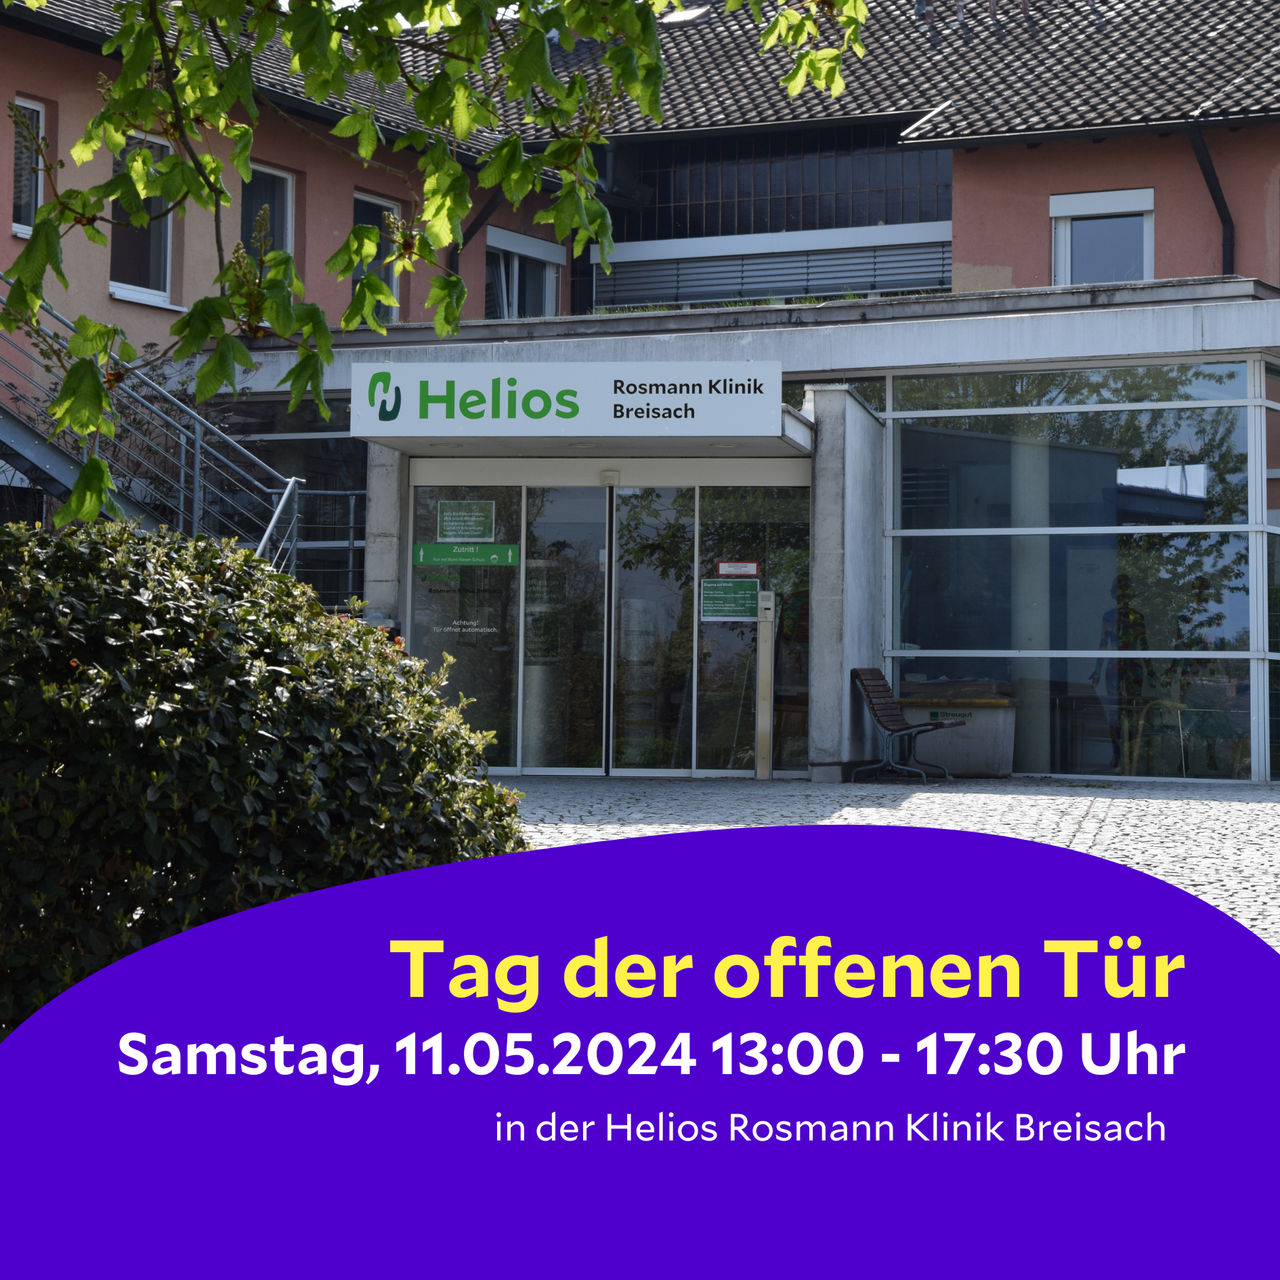 Einladung zum Tag der offenen Tür in der Helios Rosmann Klinik Breisach: "Zu Gast in Ihrer Klinik"